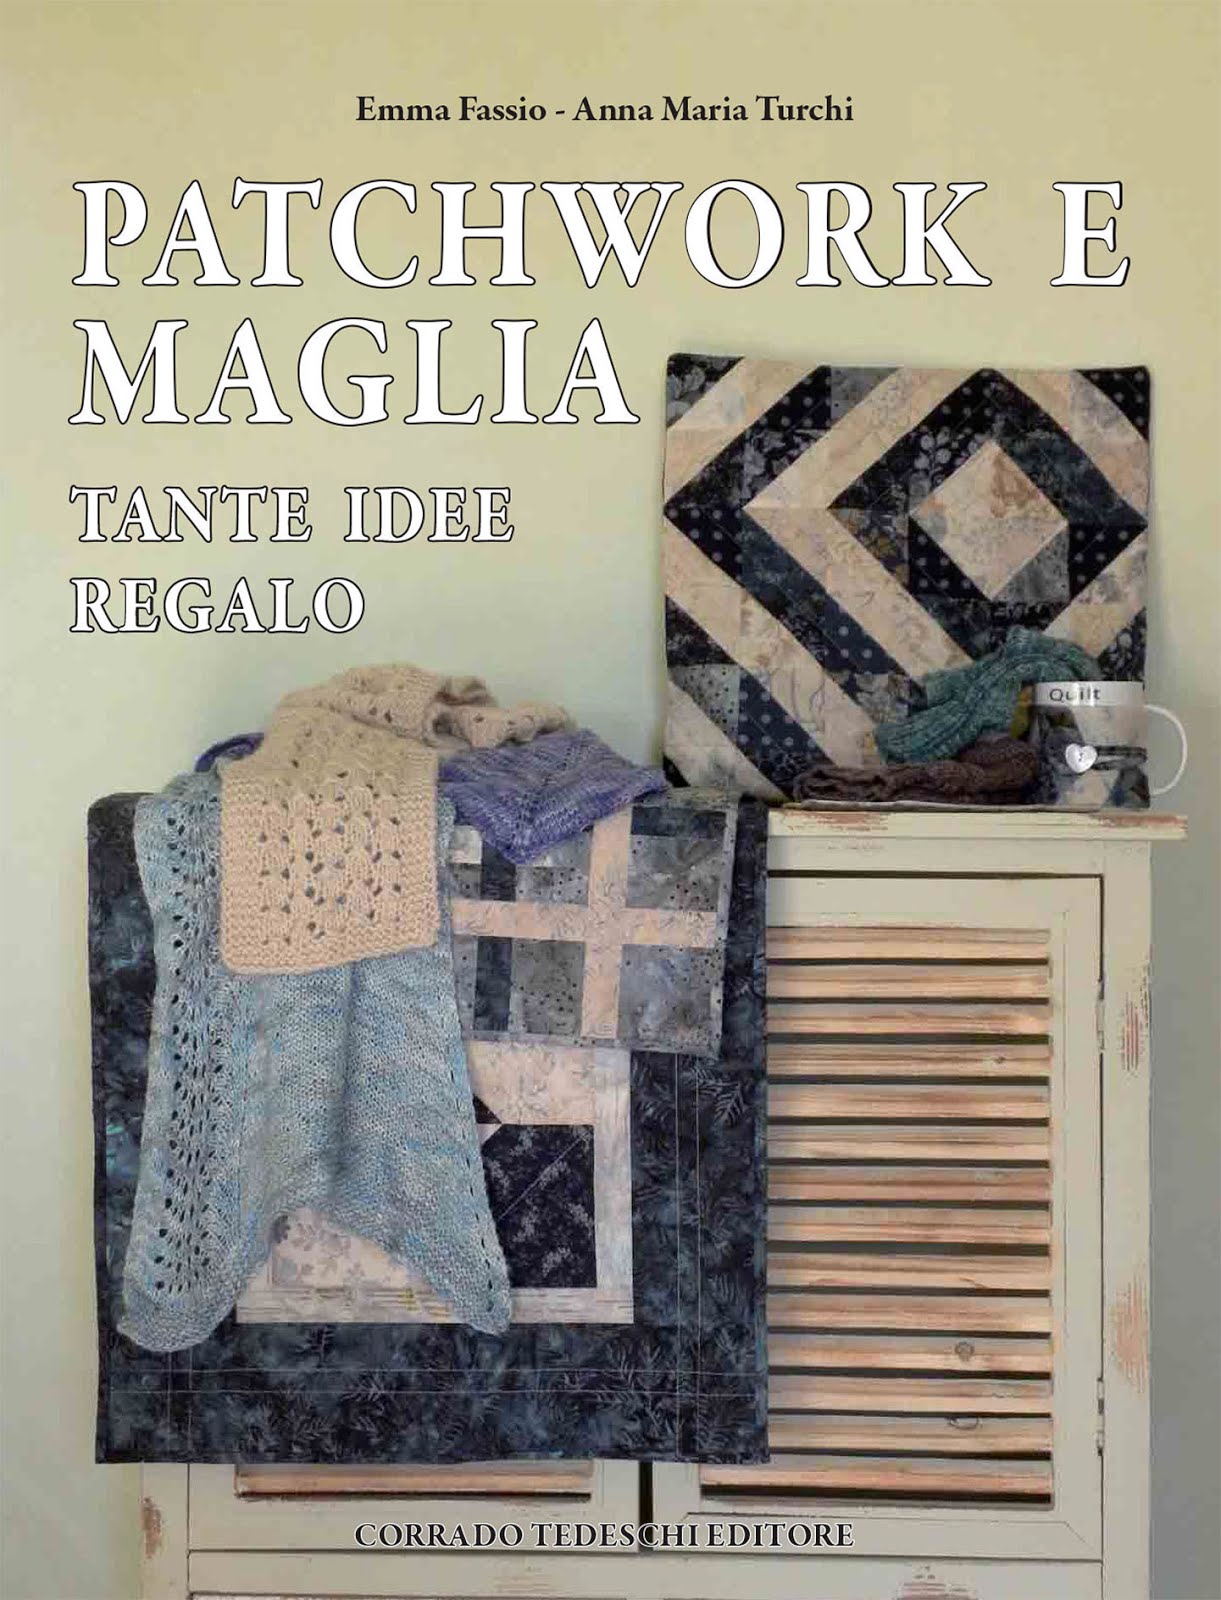 Patchwork & Maglia Tante Idee Regalo